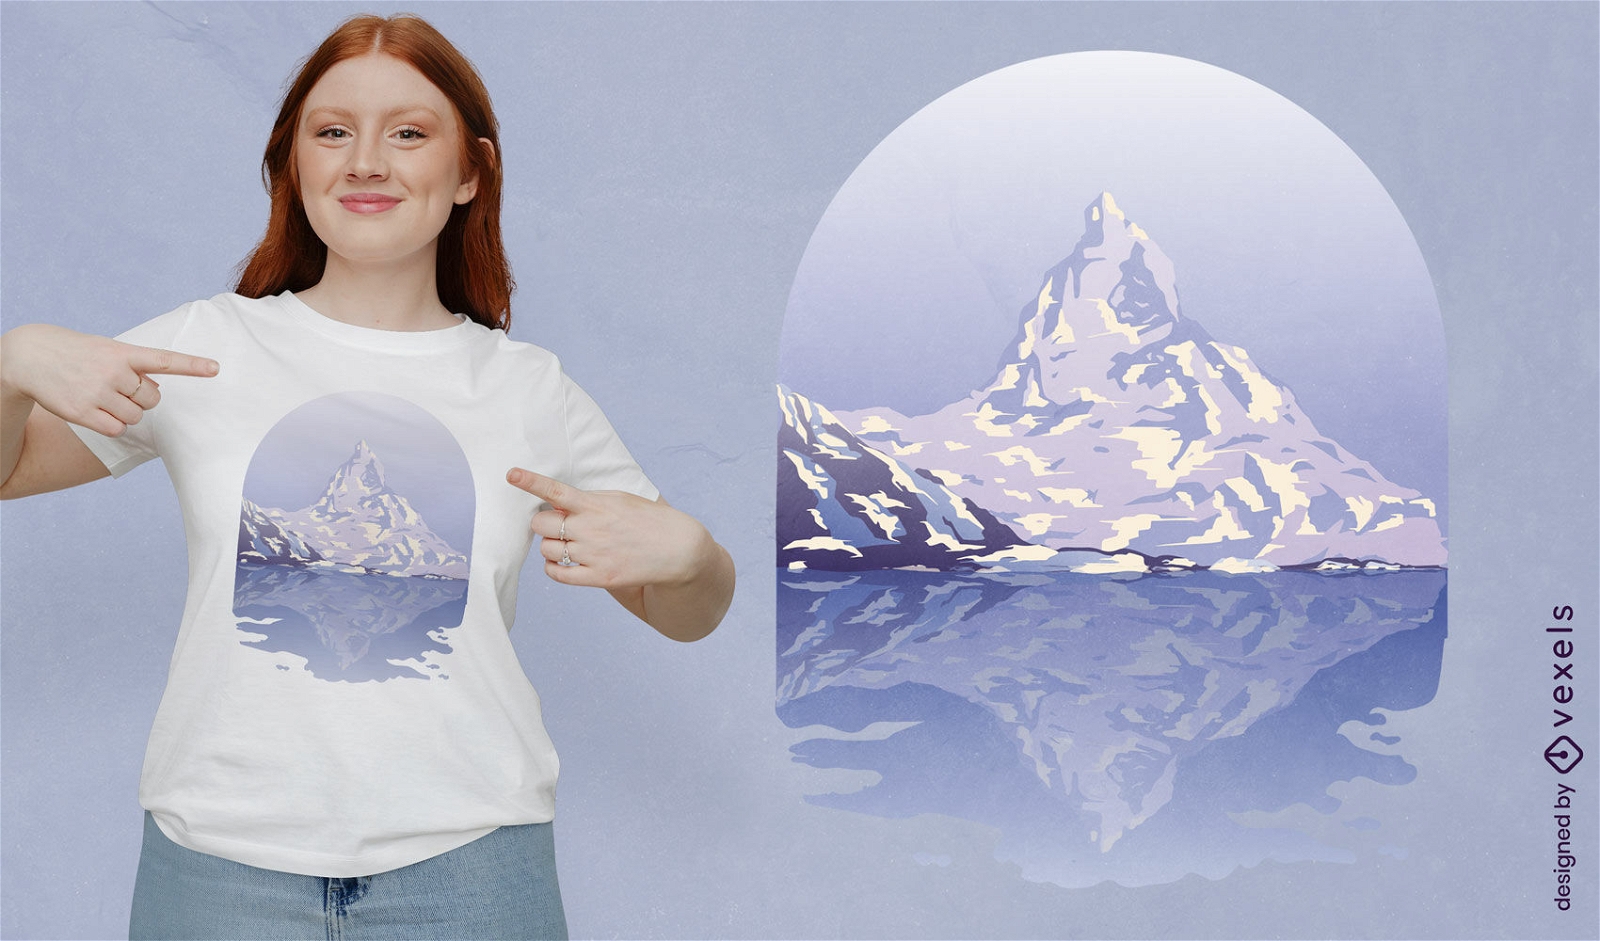 Snow mountain landscape t-shirt design